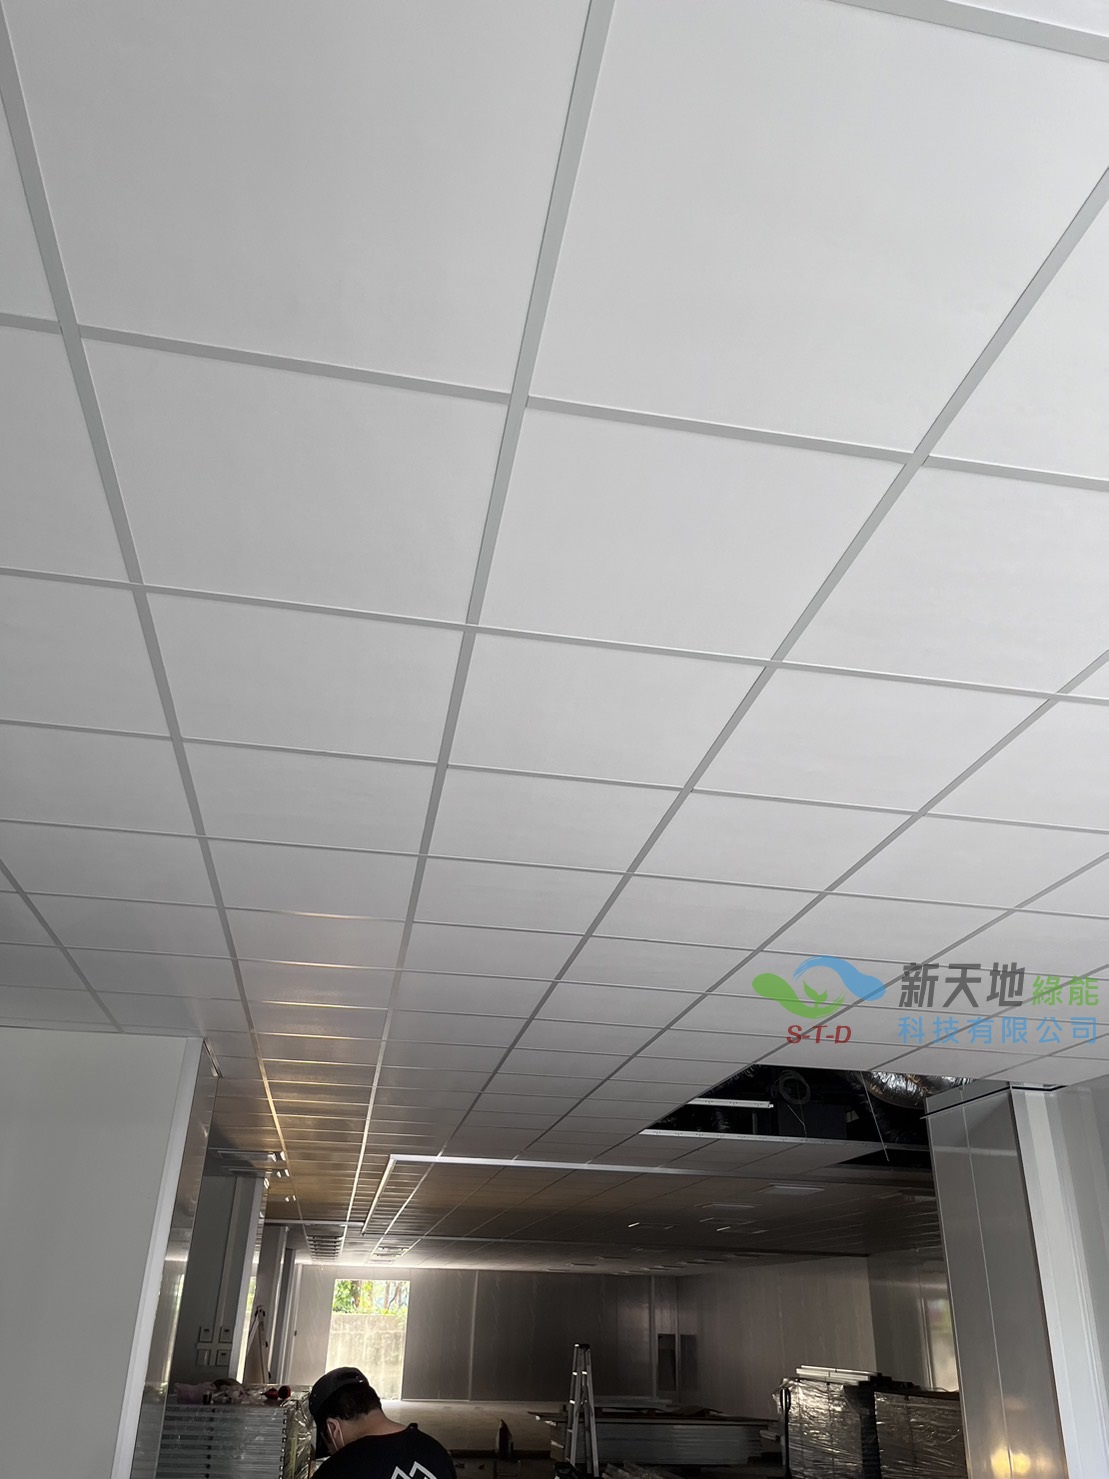 矽酸鈣輕鋼架天花板-鶯歌實績